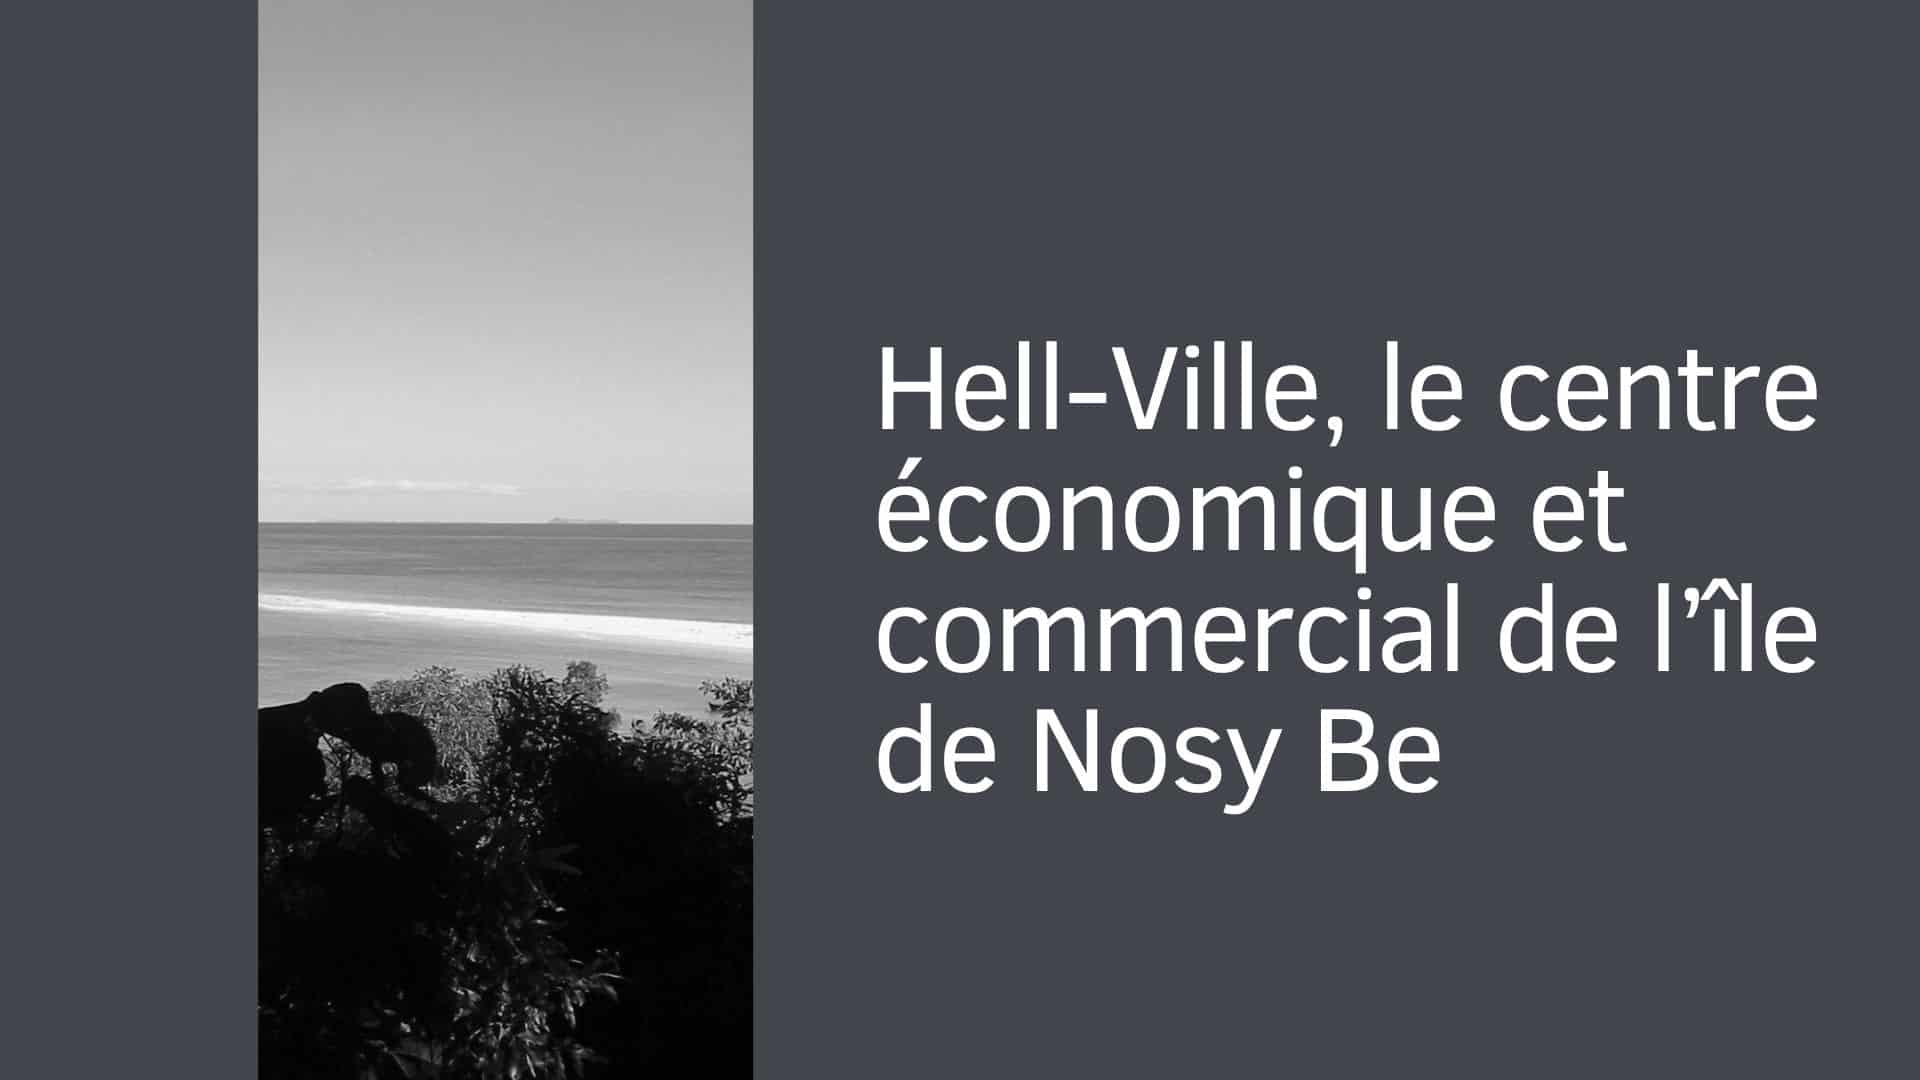 Hell-Ville, le centre économique et commercial de l’île de Nosy Be